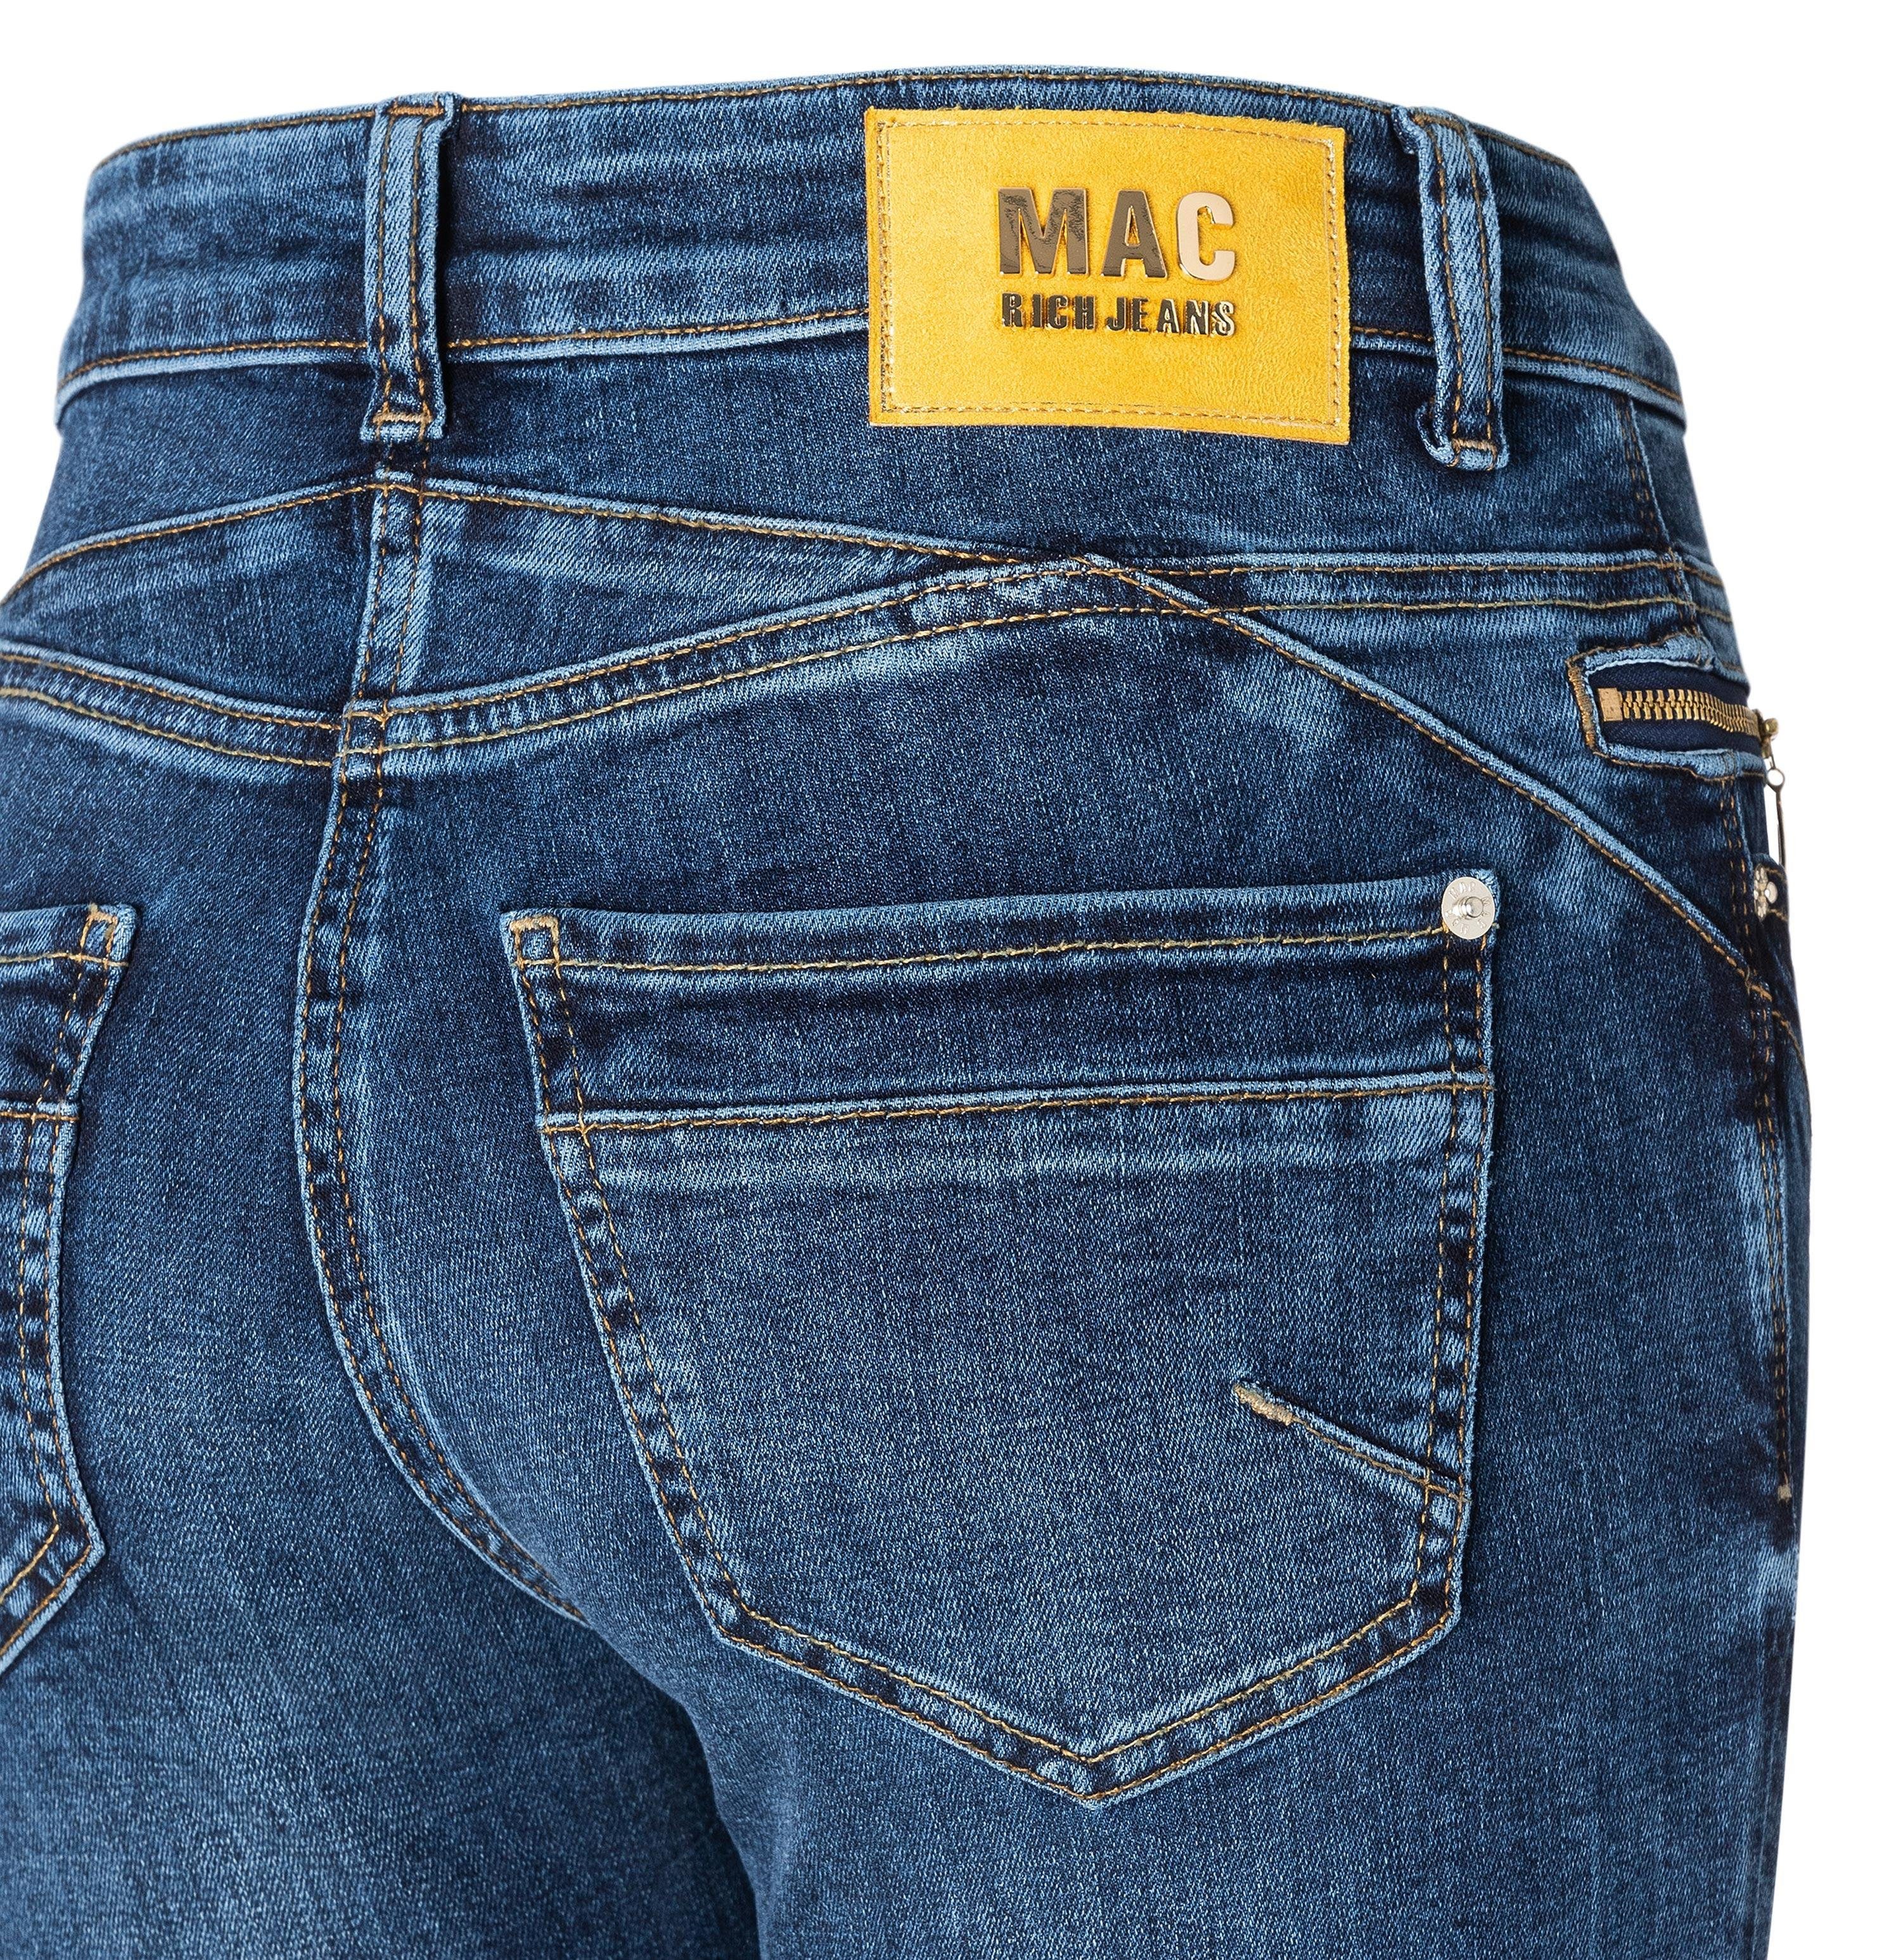 MAC Stretch-Jeans MAC RICH shadow SLIM faded 5749-90-0389 D611 wash